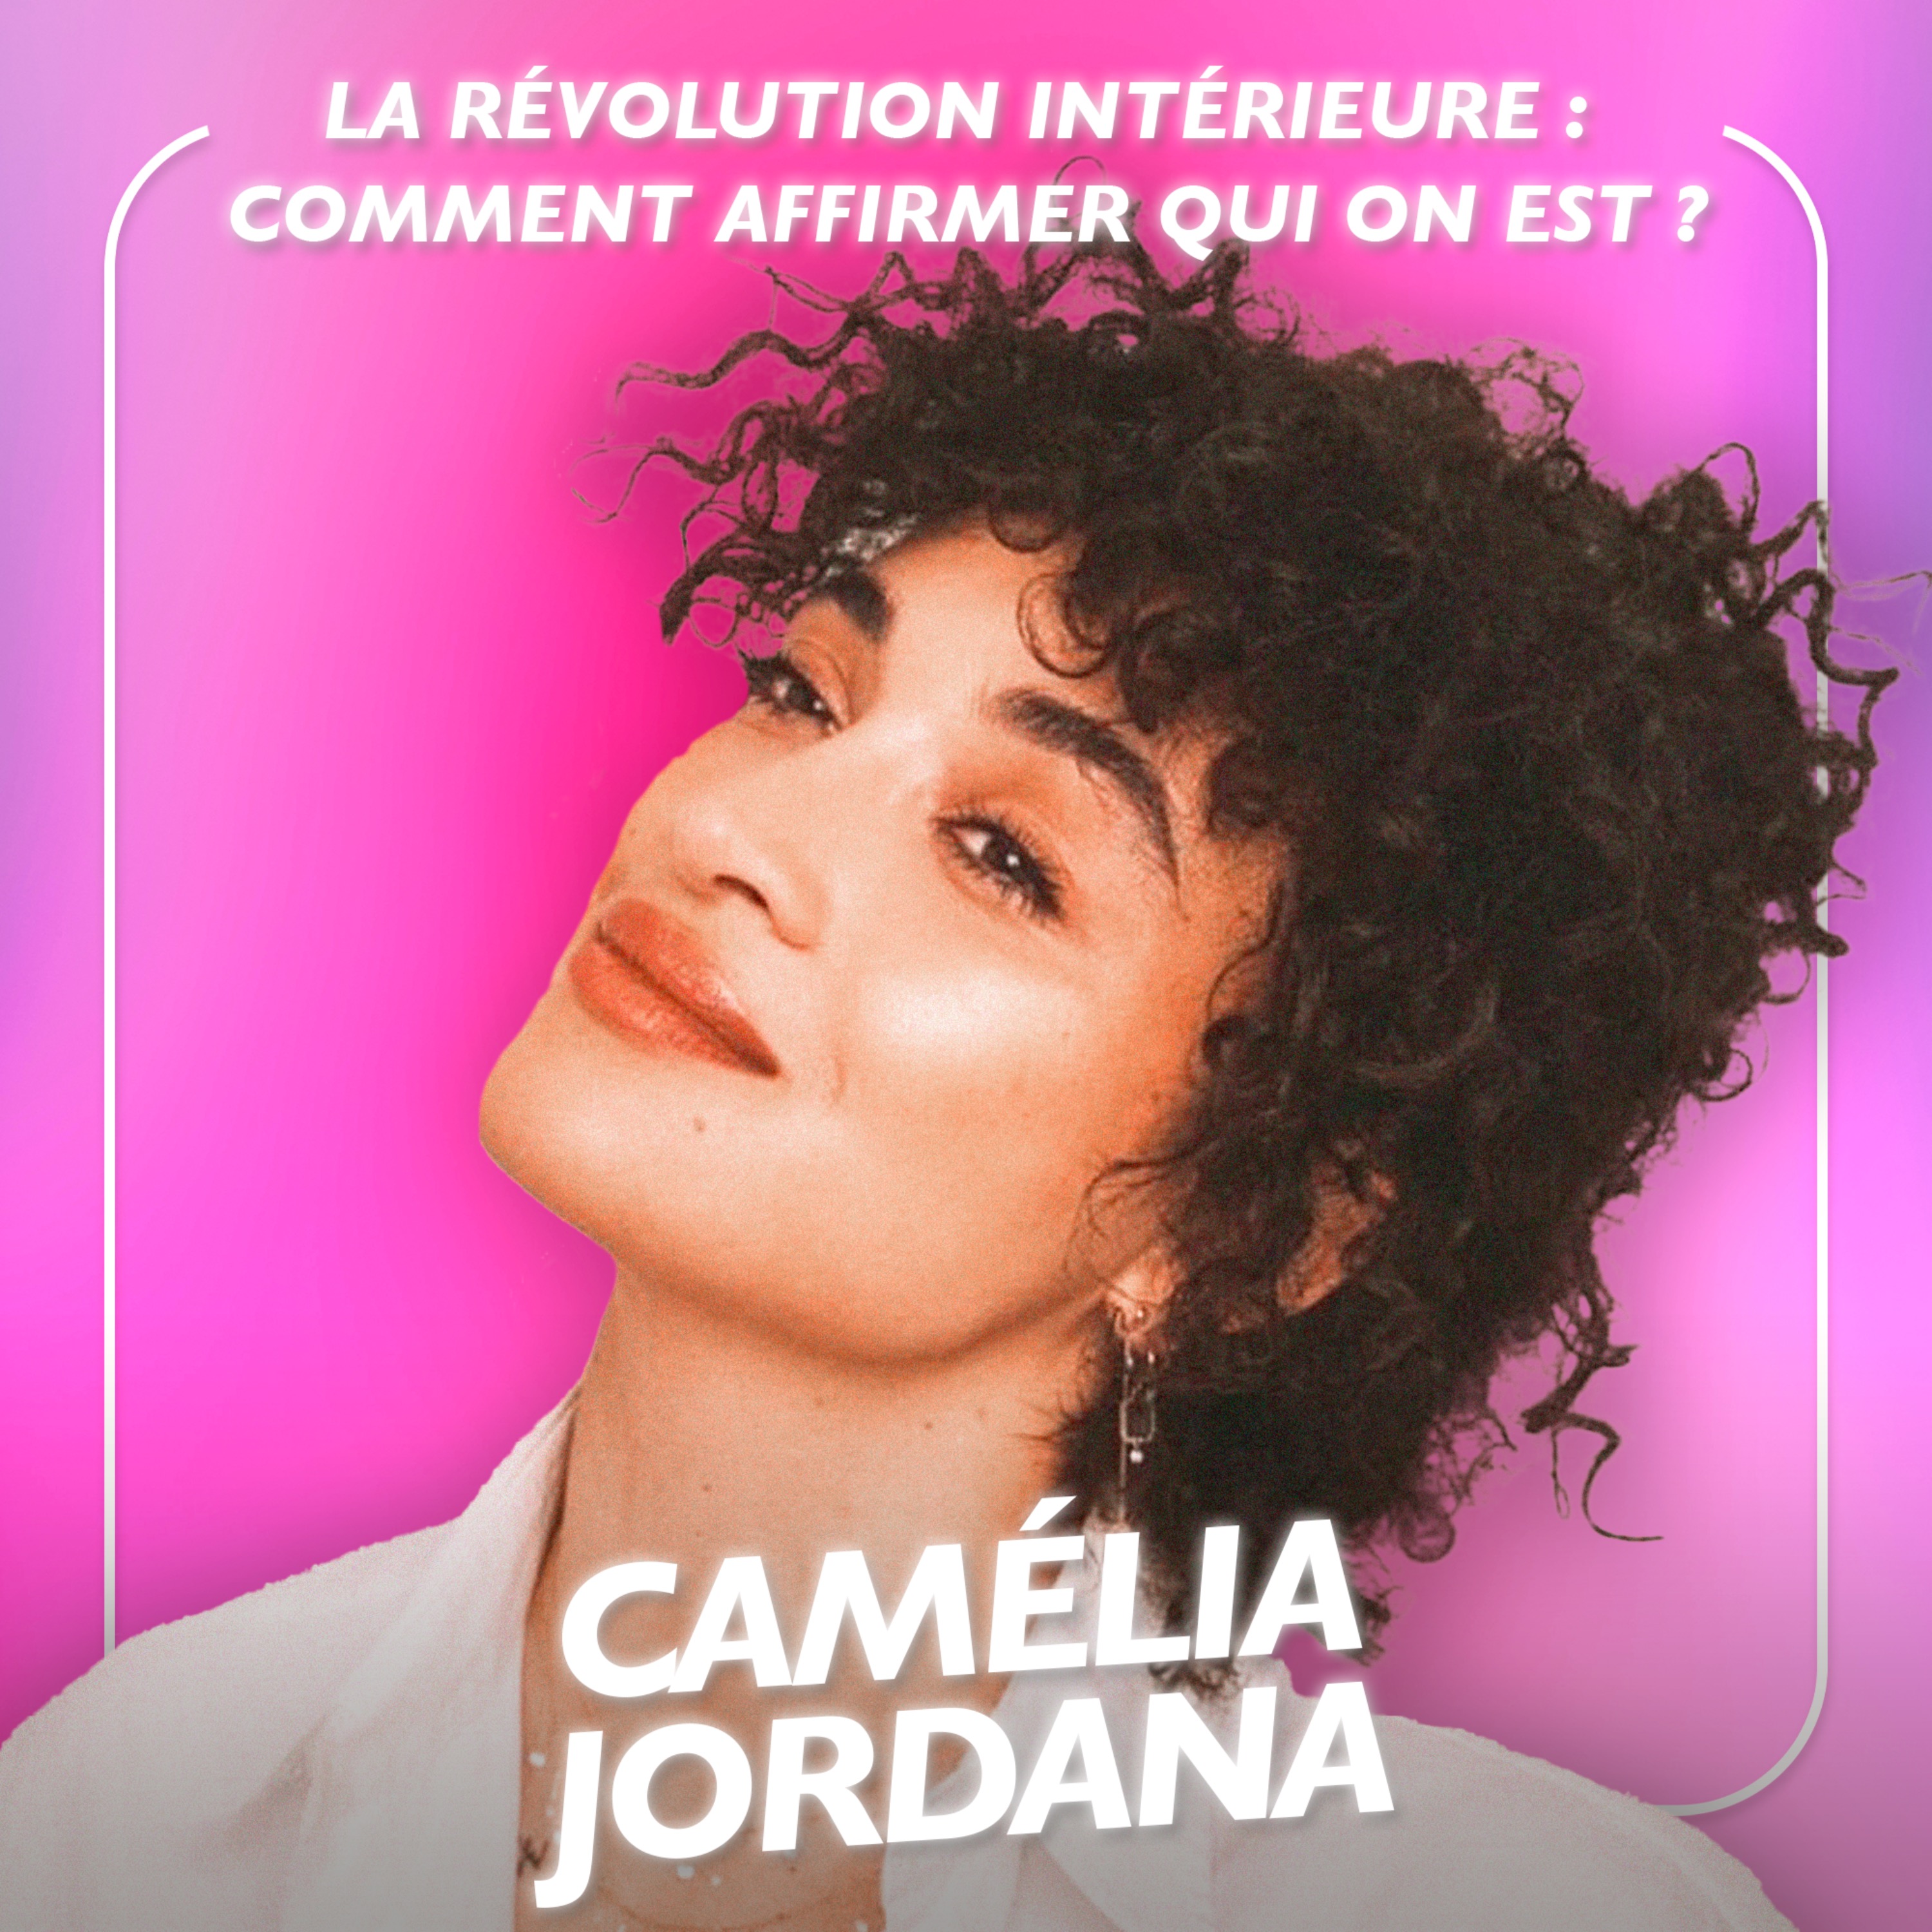 La révolution intérieure : comment affirmer qui on est, avec l’actrice et chanteuse Camélia Jordana